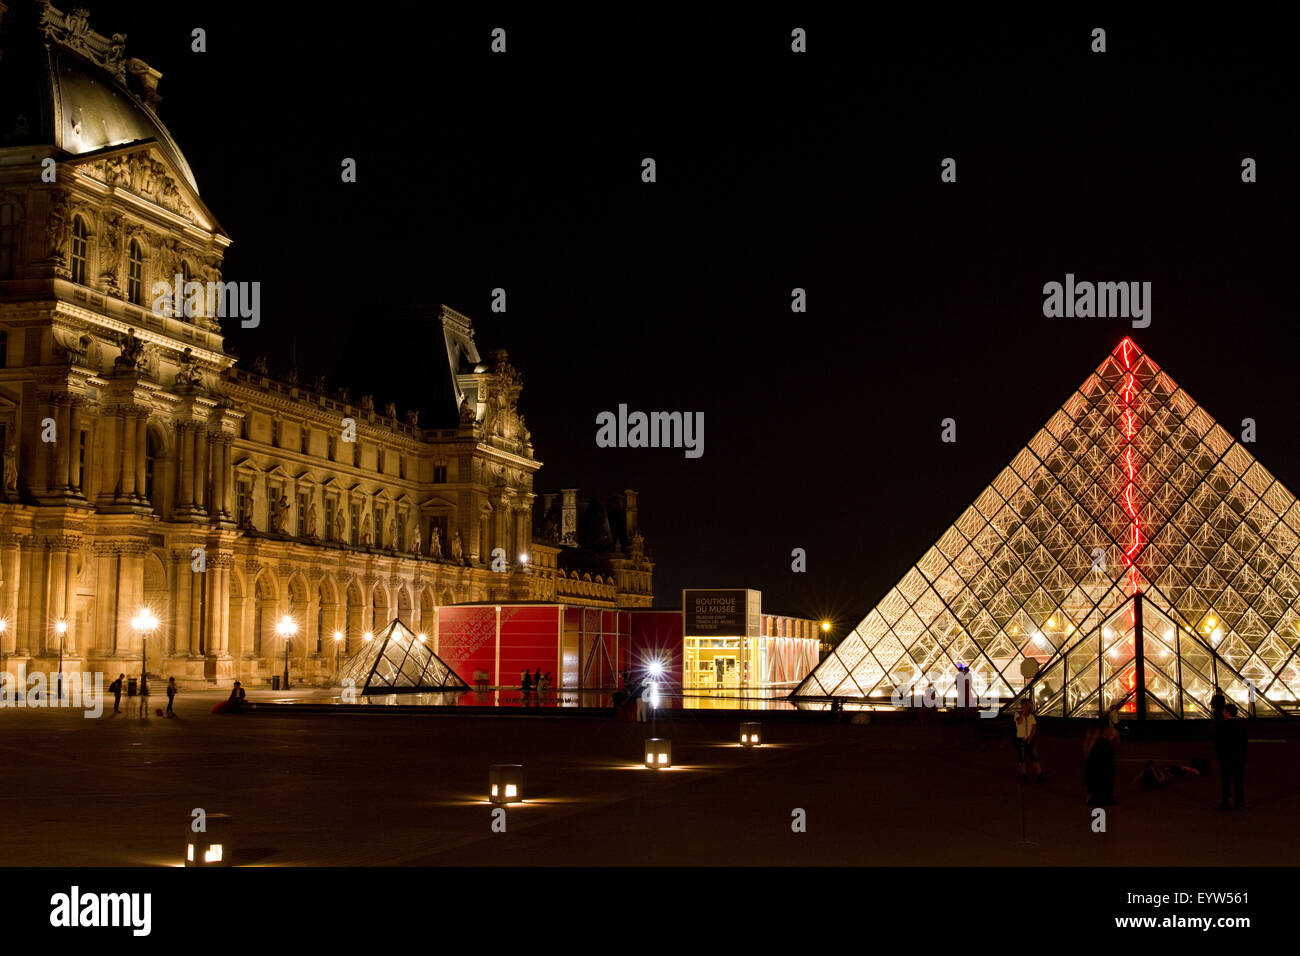 Pavillon Denon of the Louvre Palace (Palais du Louvre) and the Louvre Pyramid (Pyramide du Louvre). Stock Photo